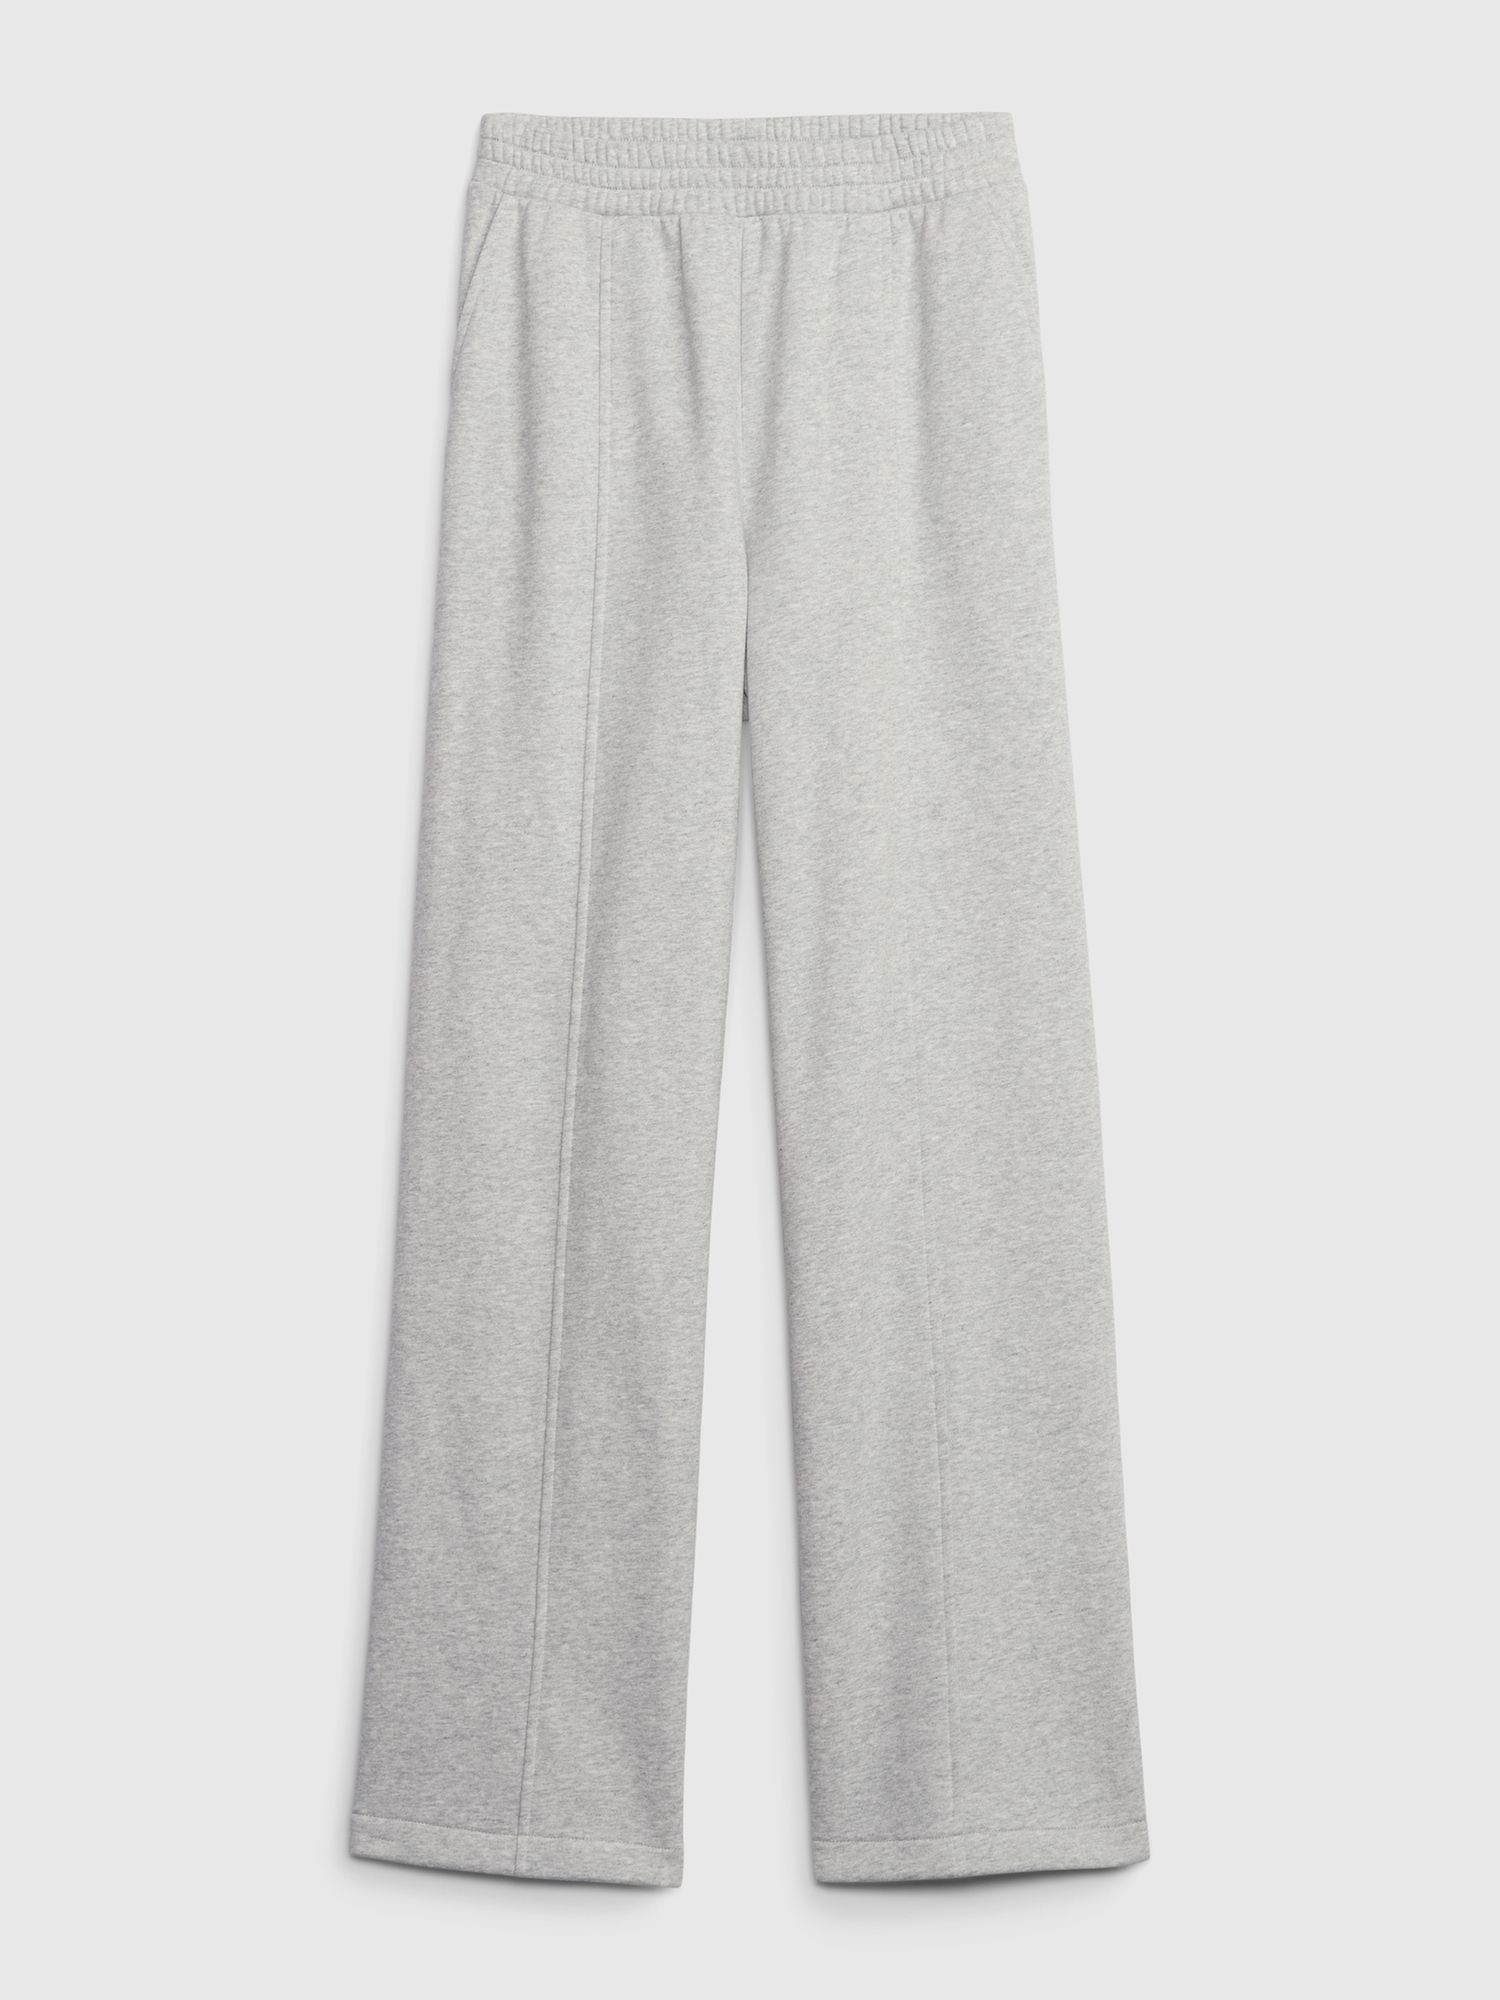  Grey Sweatpants Womens Joggers Women Wide Leg